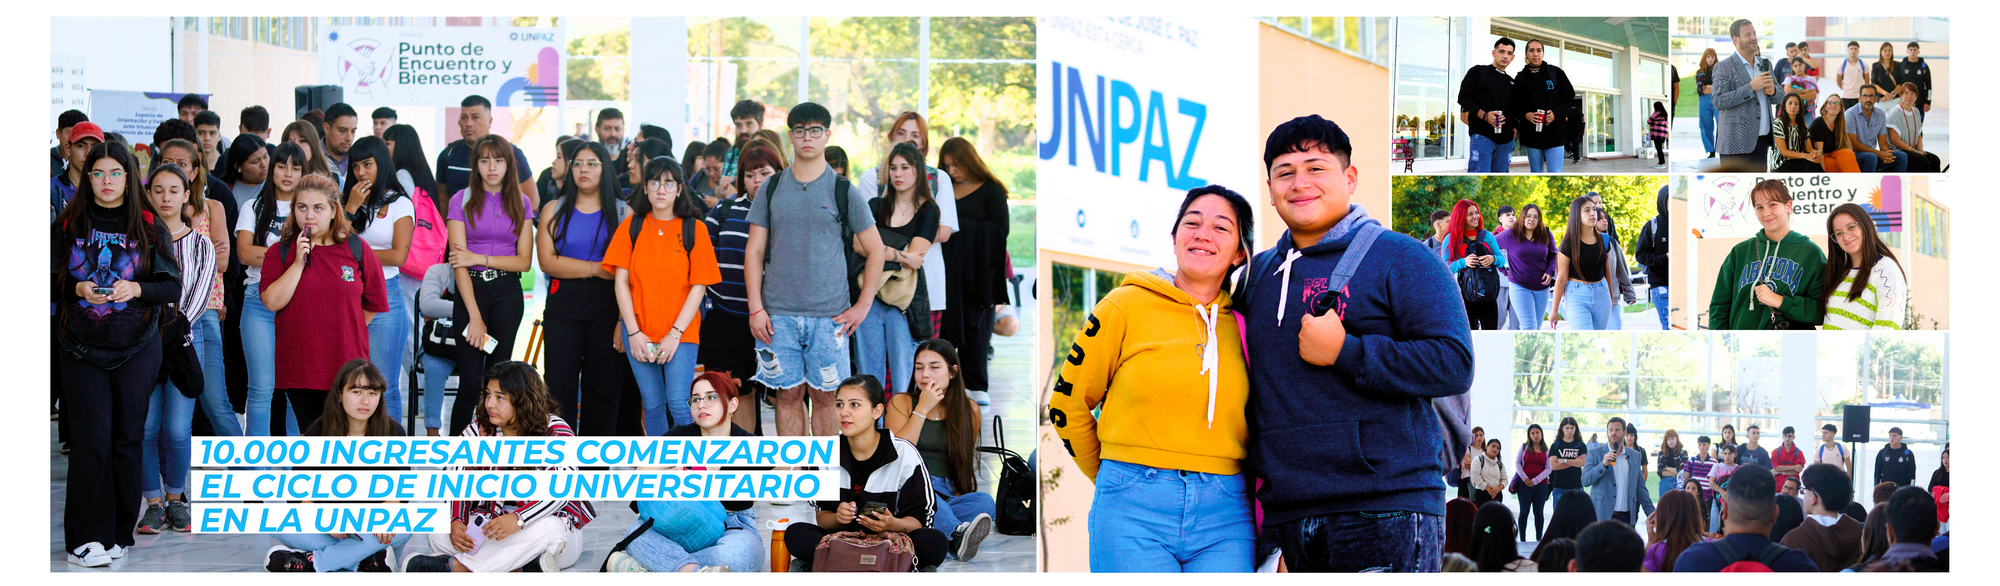 10.000 ingresantes comenzaron el Ciclo de Inicio Universitario en la UNPAZ